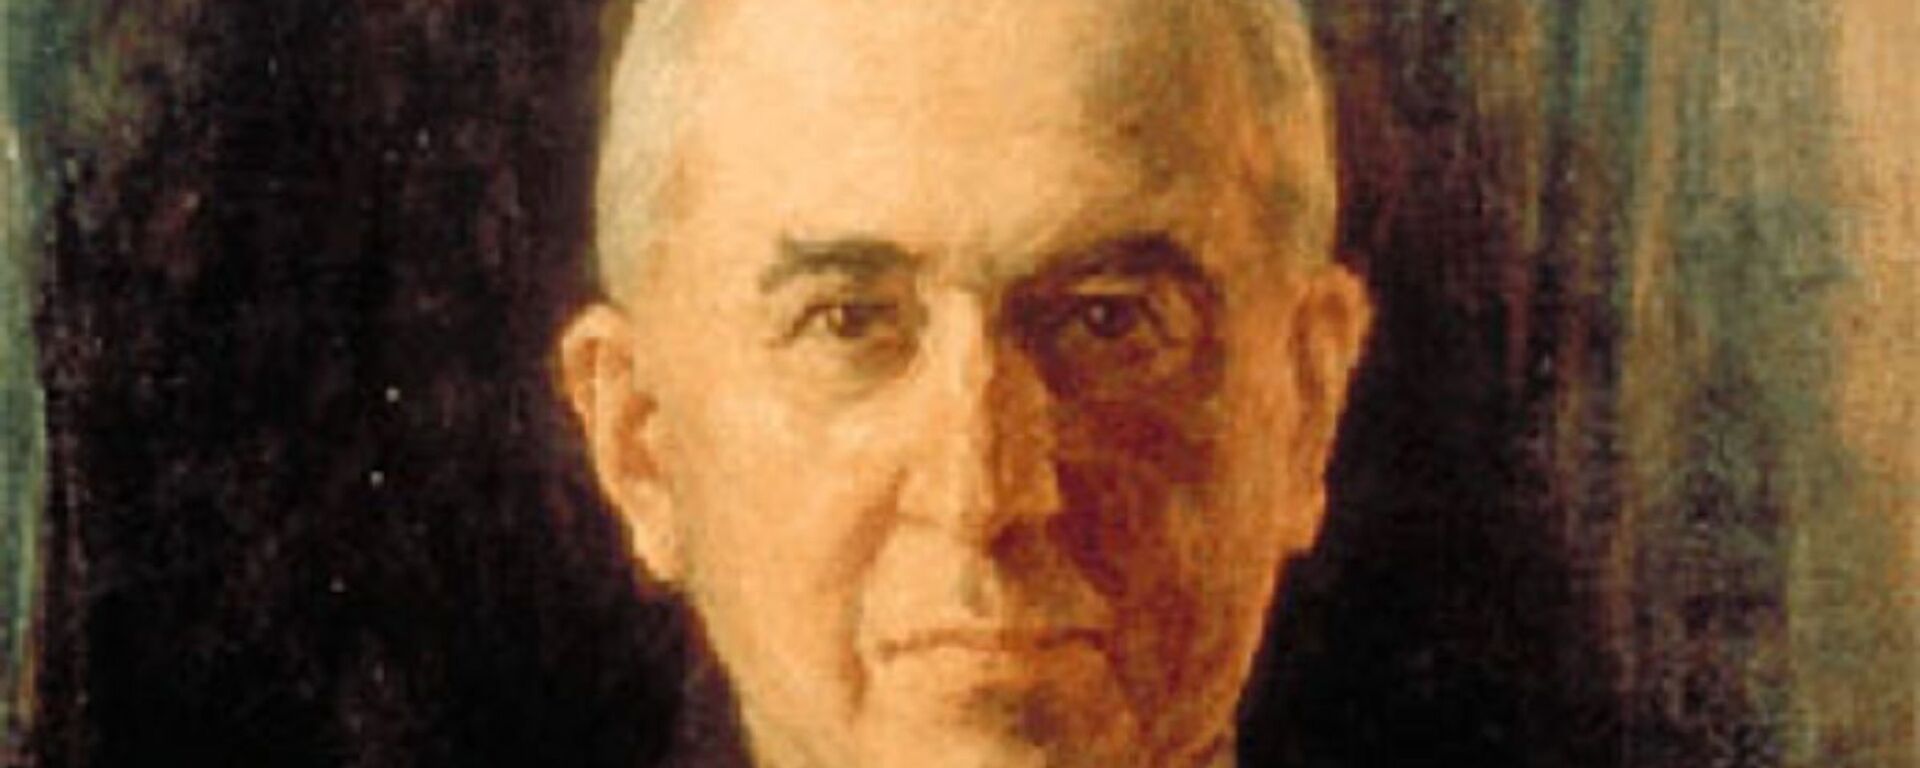 Српски научник Милутин Миланковић - Sputnik Србија, 1920, 17.06.2020